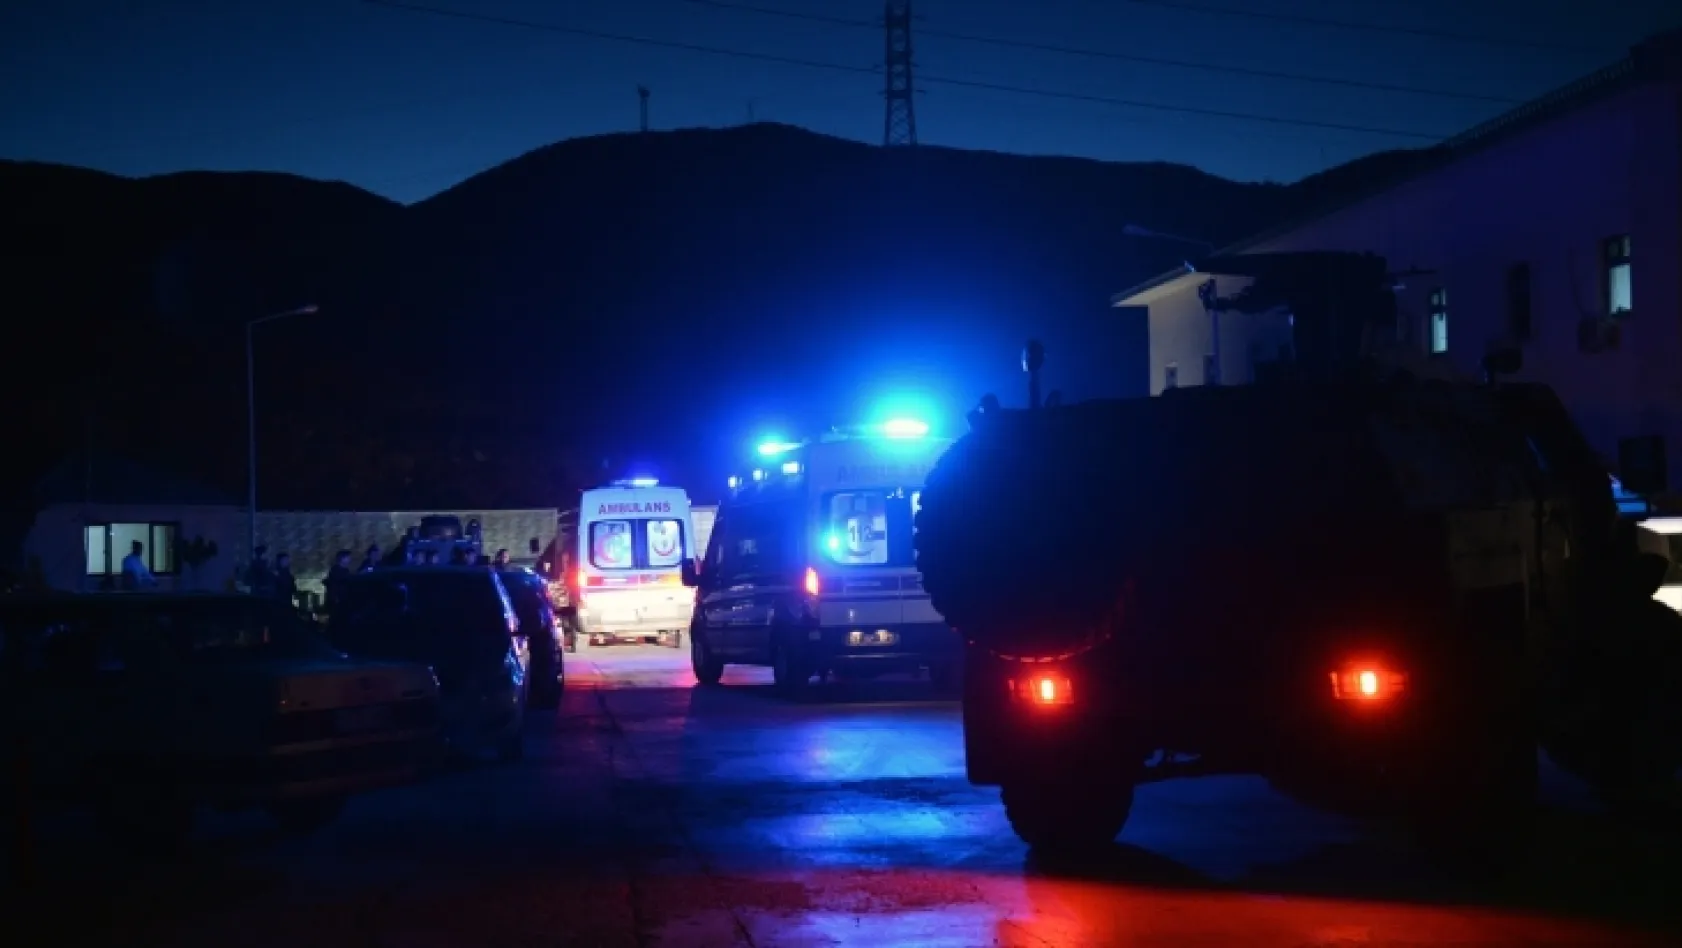 Tunceli'de 9 terörist öldürüldü, 8 terörist teslim oldu